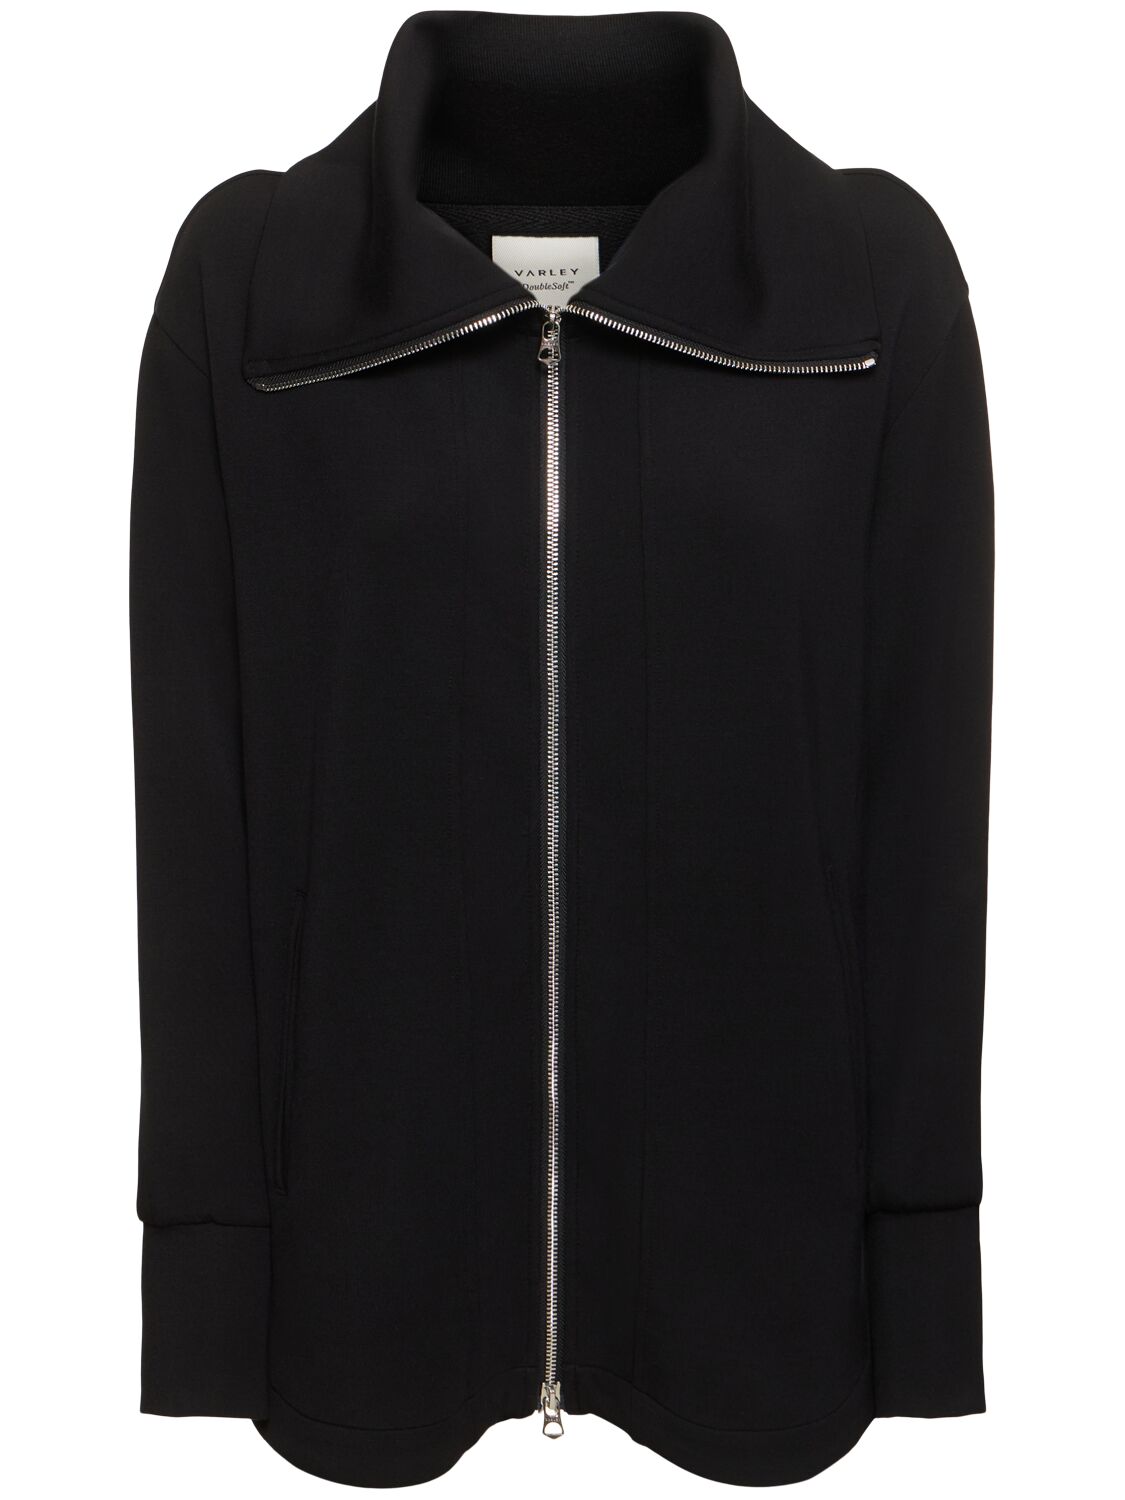 Varley Raleigh Zip Through Sweatshirt In Black